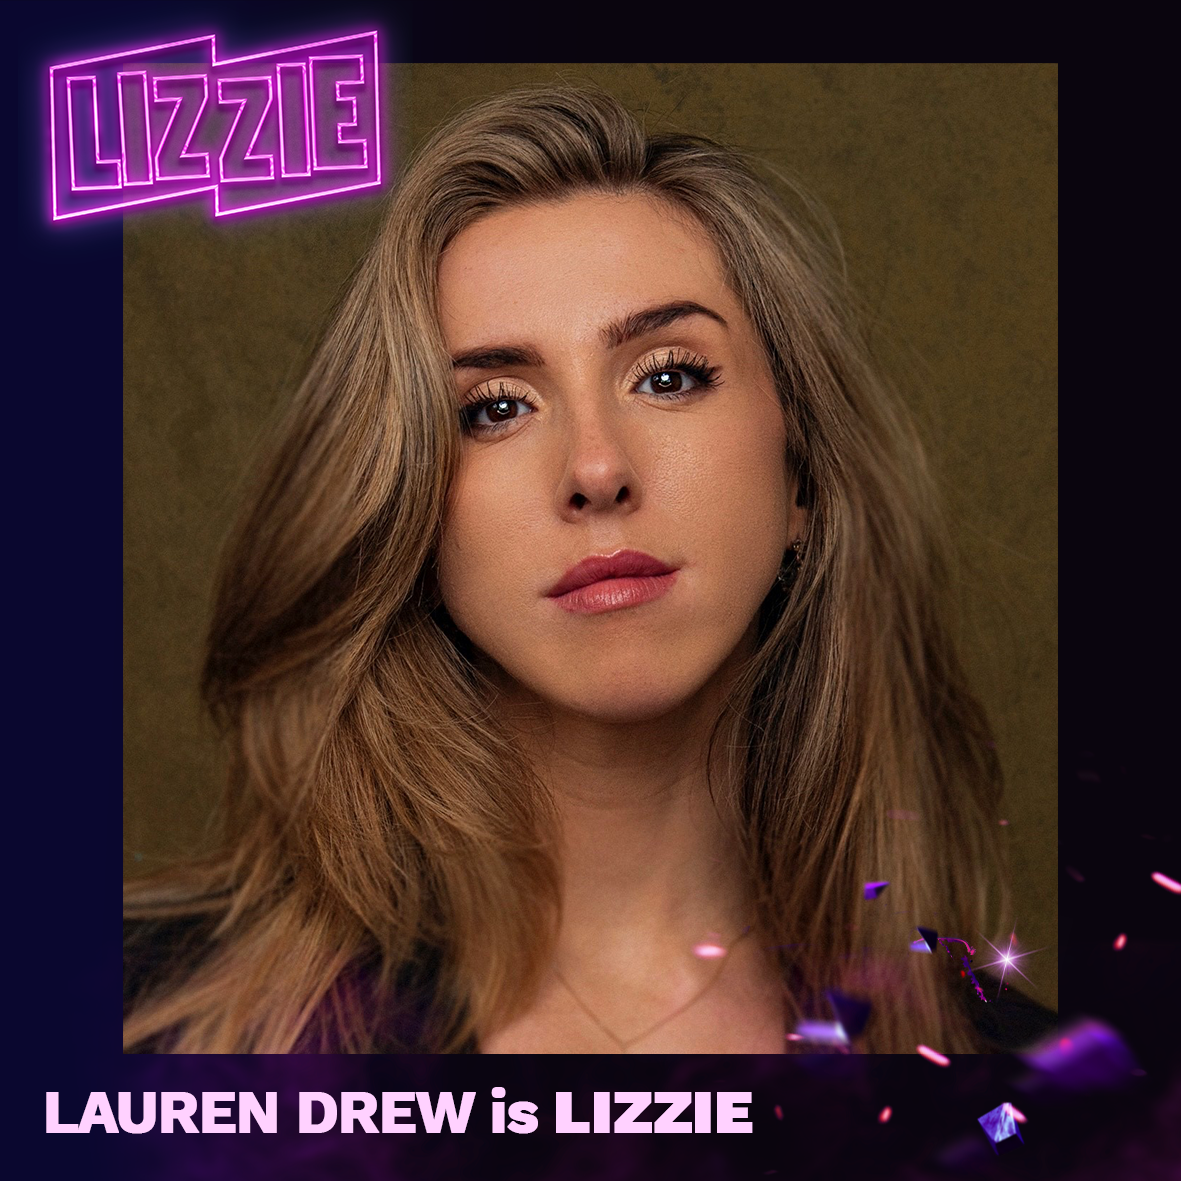 Lauren Drew is Lizzie